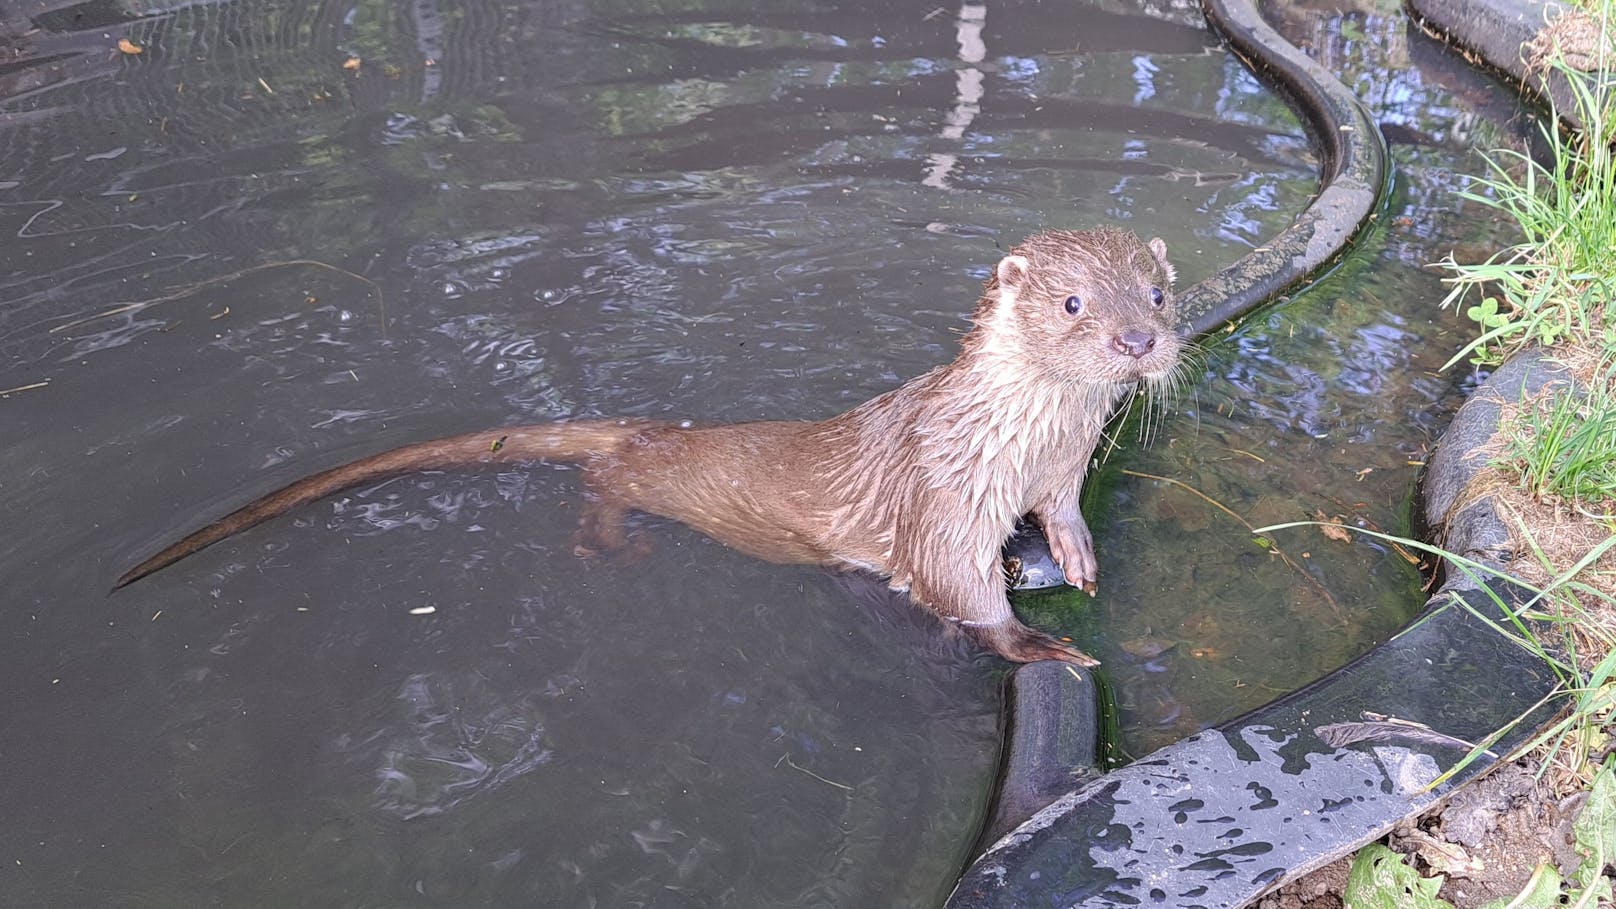 Otterdame Lotti wohnt seit kurzem im Naturpark. Im Jänner wurde sie verletzt und verwaist gefunden und hat nun ein neues Zuhause in Schrems